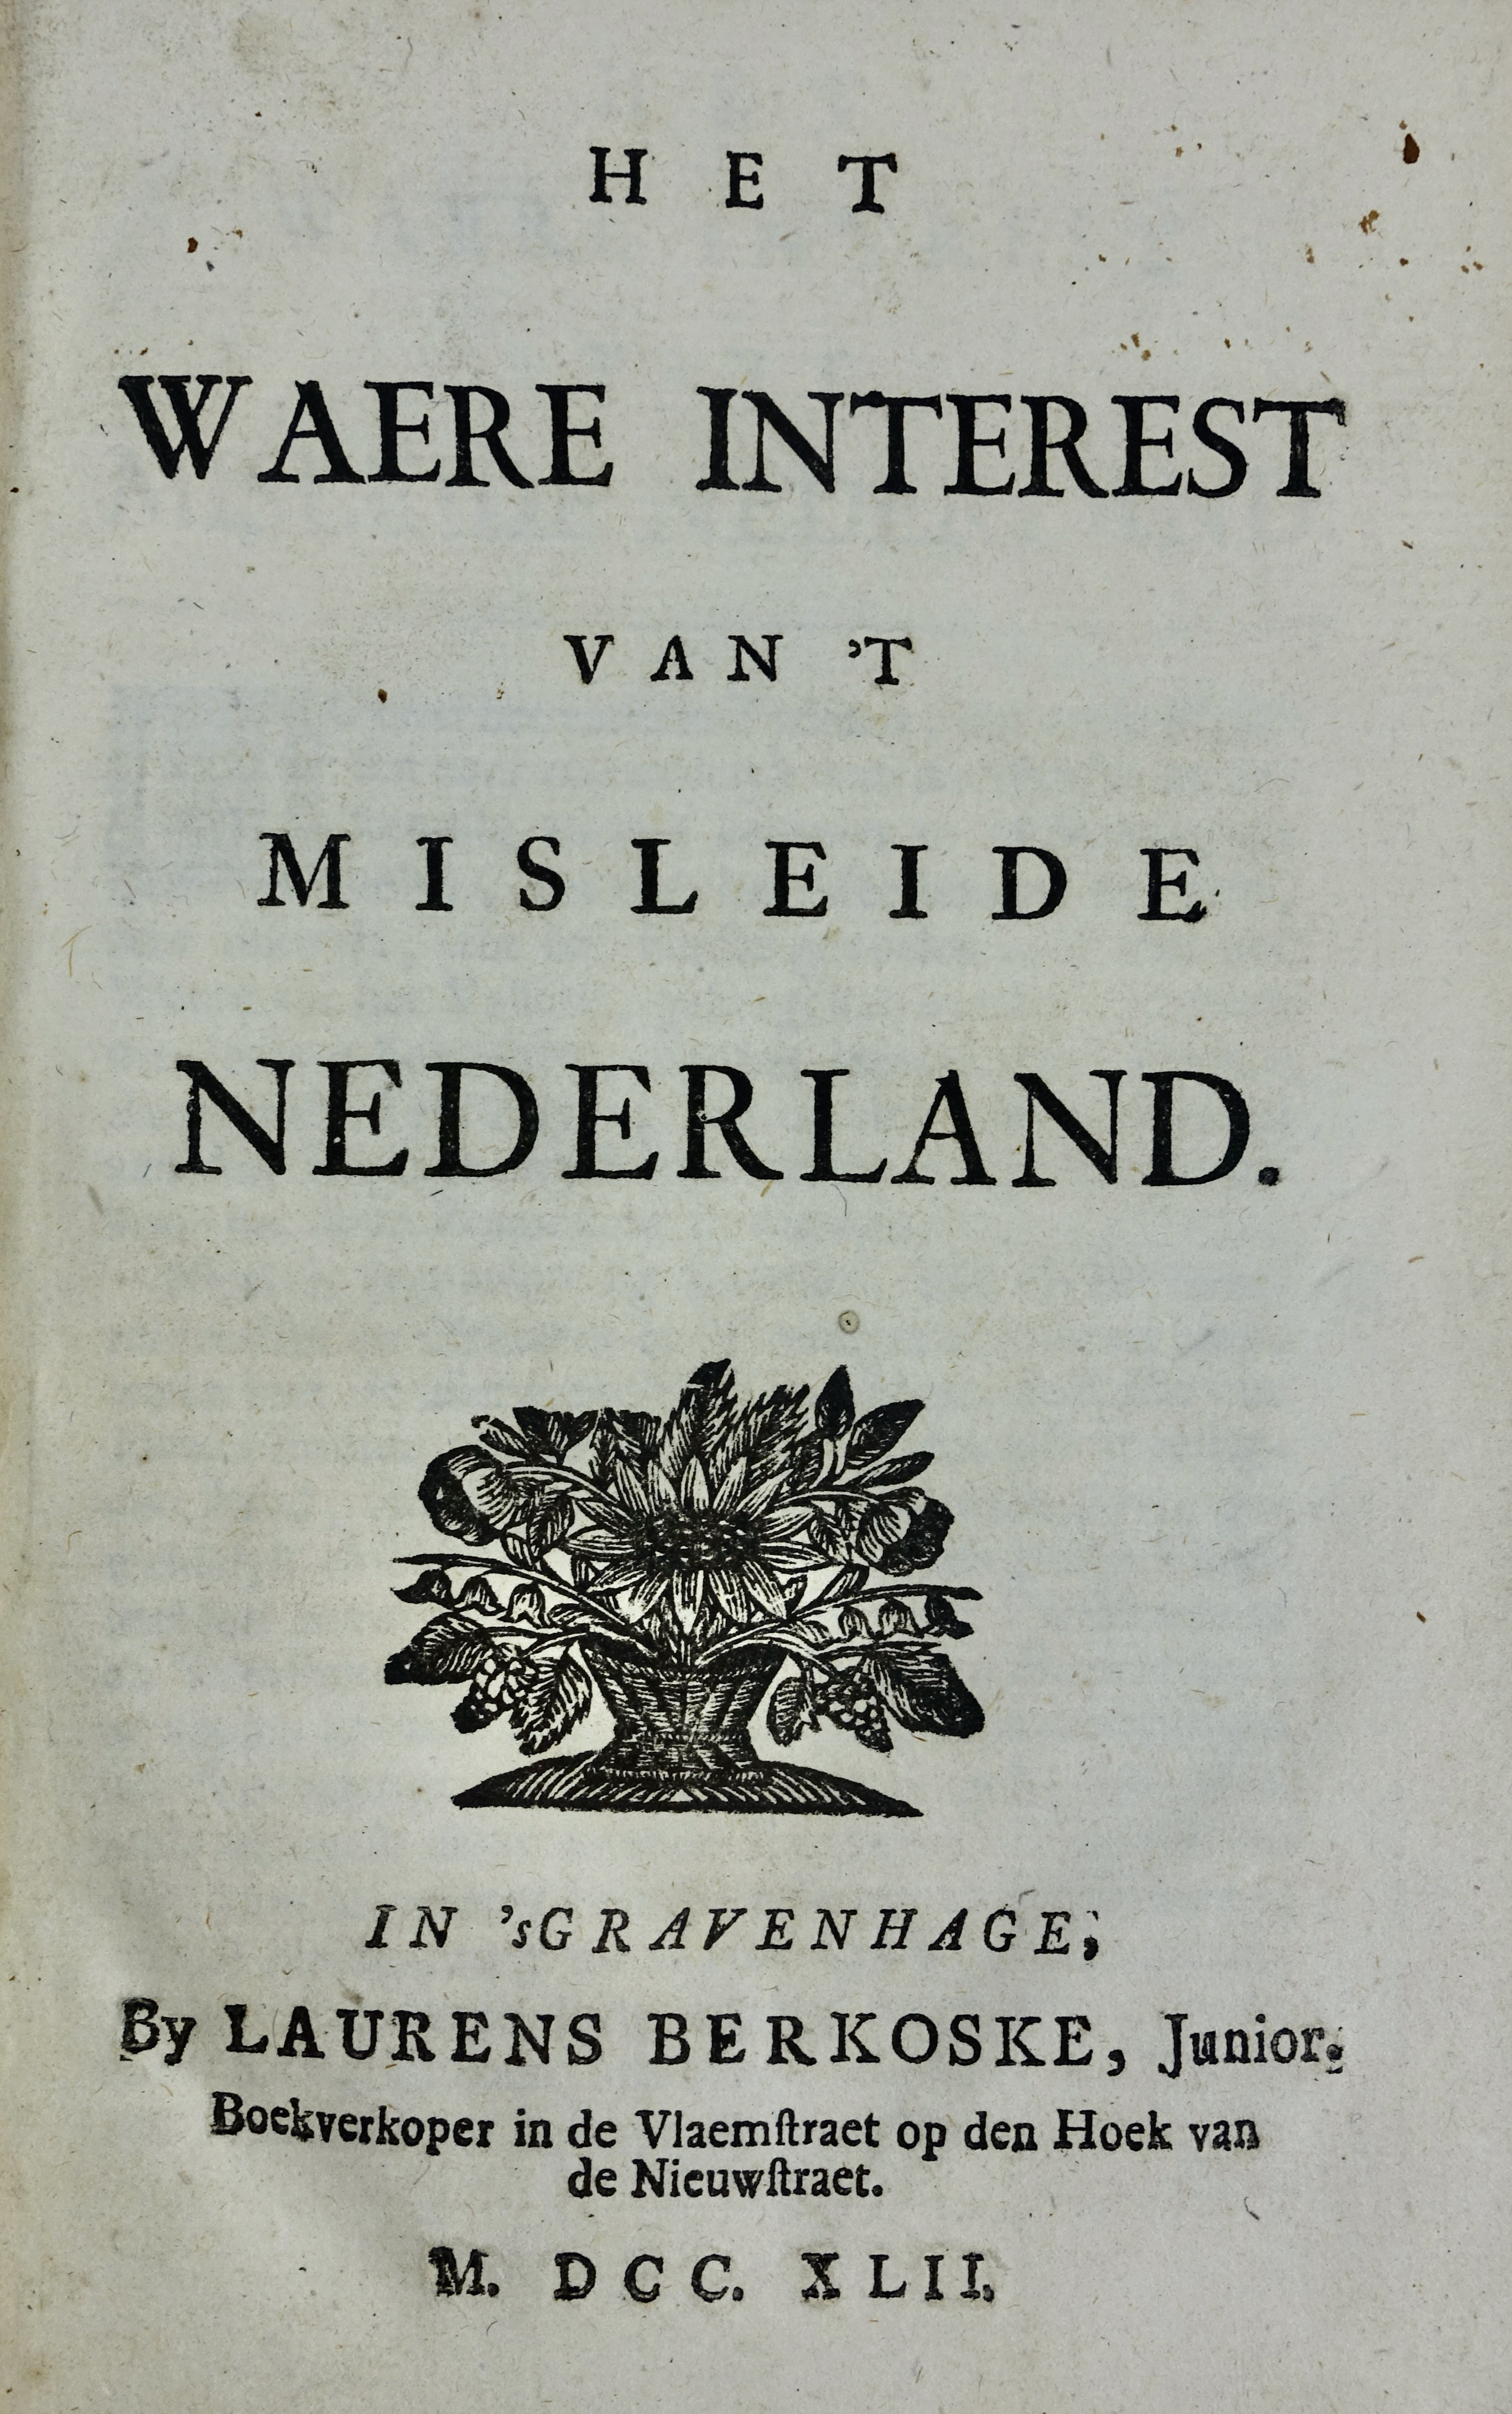 WAERE INTEREST, Het, van 't misleide Nederland. The Hague, L. Berkoske, 1742